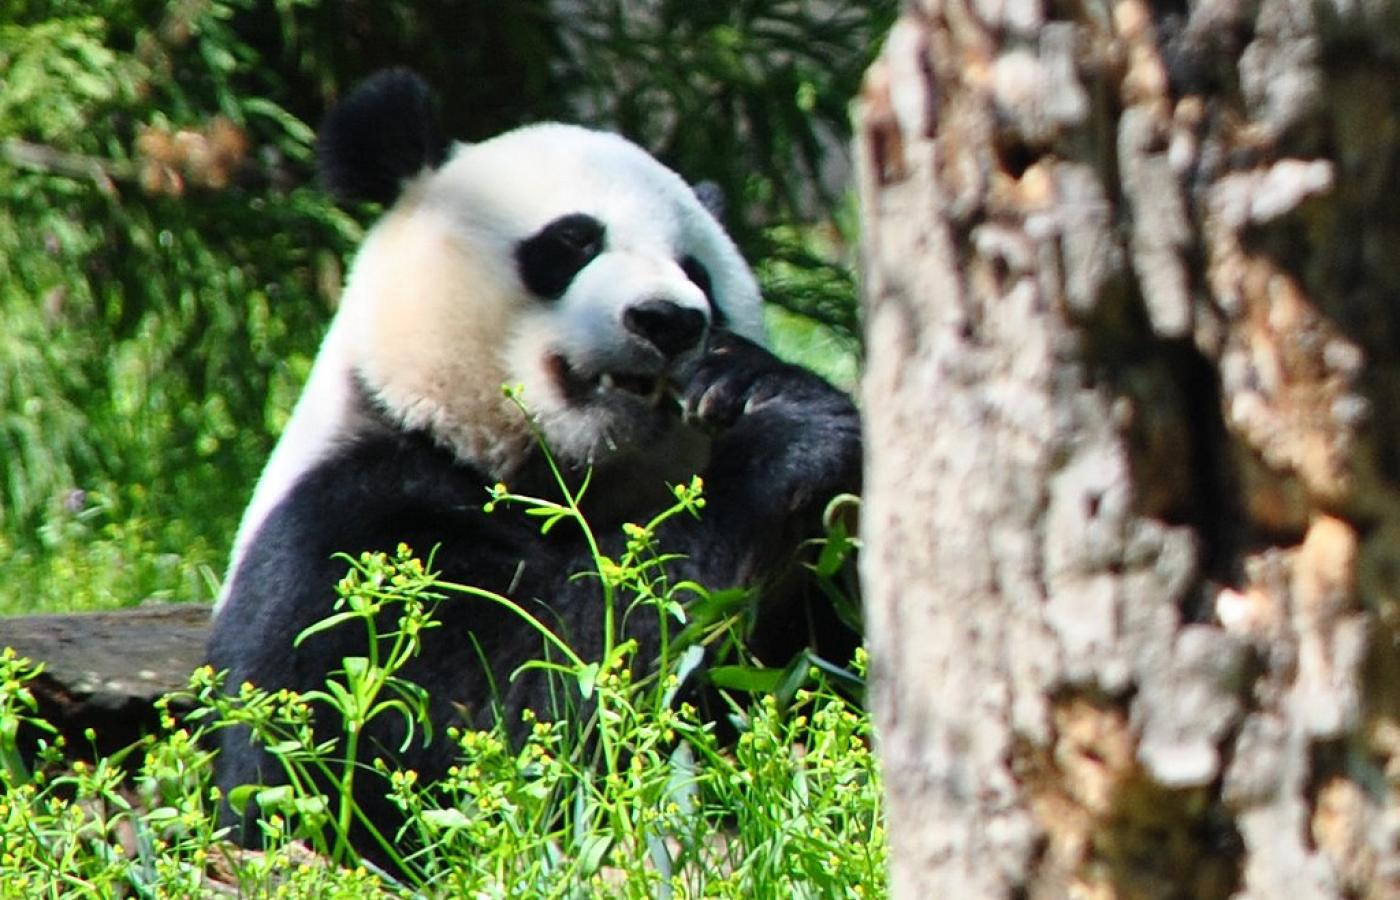 Międzynarodowa Unia Ochrony Przyrody donosi, że w Chinach odnotowano ponad 1800 osobników <b>pandy wielkiej</b> żyjących na wolności. Panda została przeniesiona z kategorii zwierząt „zagrożonych” (endangered), do kategorii „narażonych” (vulnerable). Ekolodzy studzą jednak zapał. Podkreślają, że zmiana oznacza jedynie, iż pandy wciąż mogą wyginąć, ale nie stanie się to tak szybko, jak początkowo sądzono. Niemniej sukces (choćby niewielki) jest. Jeśli nadal będziemy chronić pandy, możemy mieć nadzieję, że gatunek pozostanie na Ziemi przez długi czas.